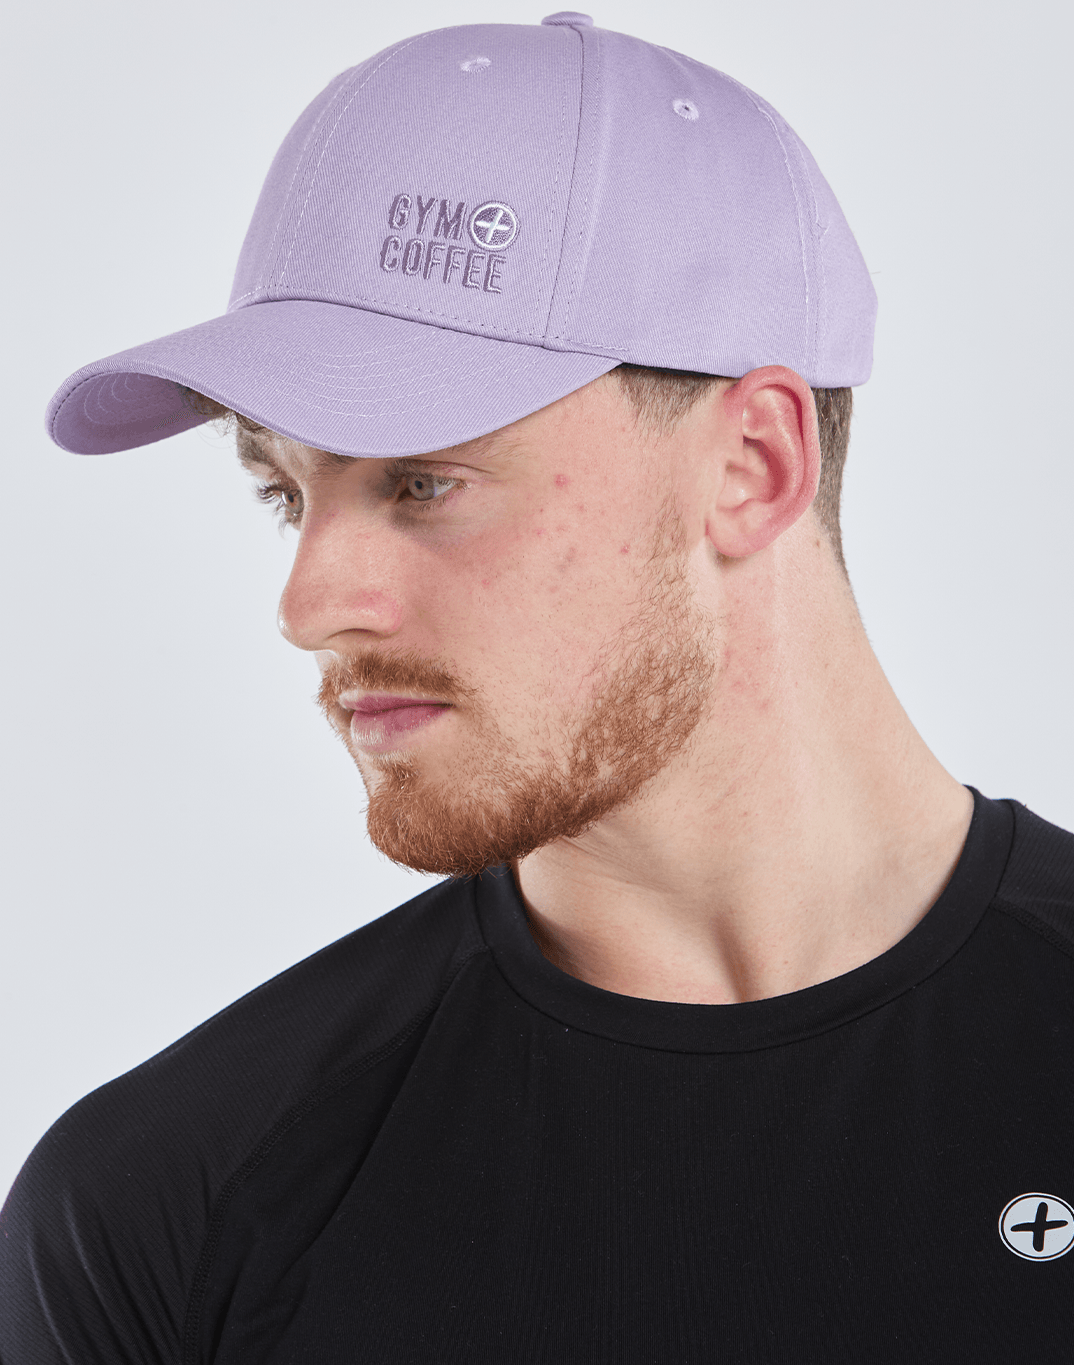 Hats Off Cap in Lilac - Headwear - Windsorbauders IE